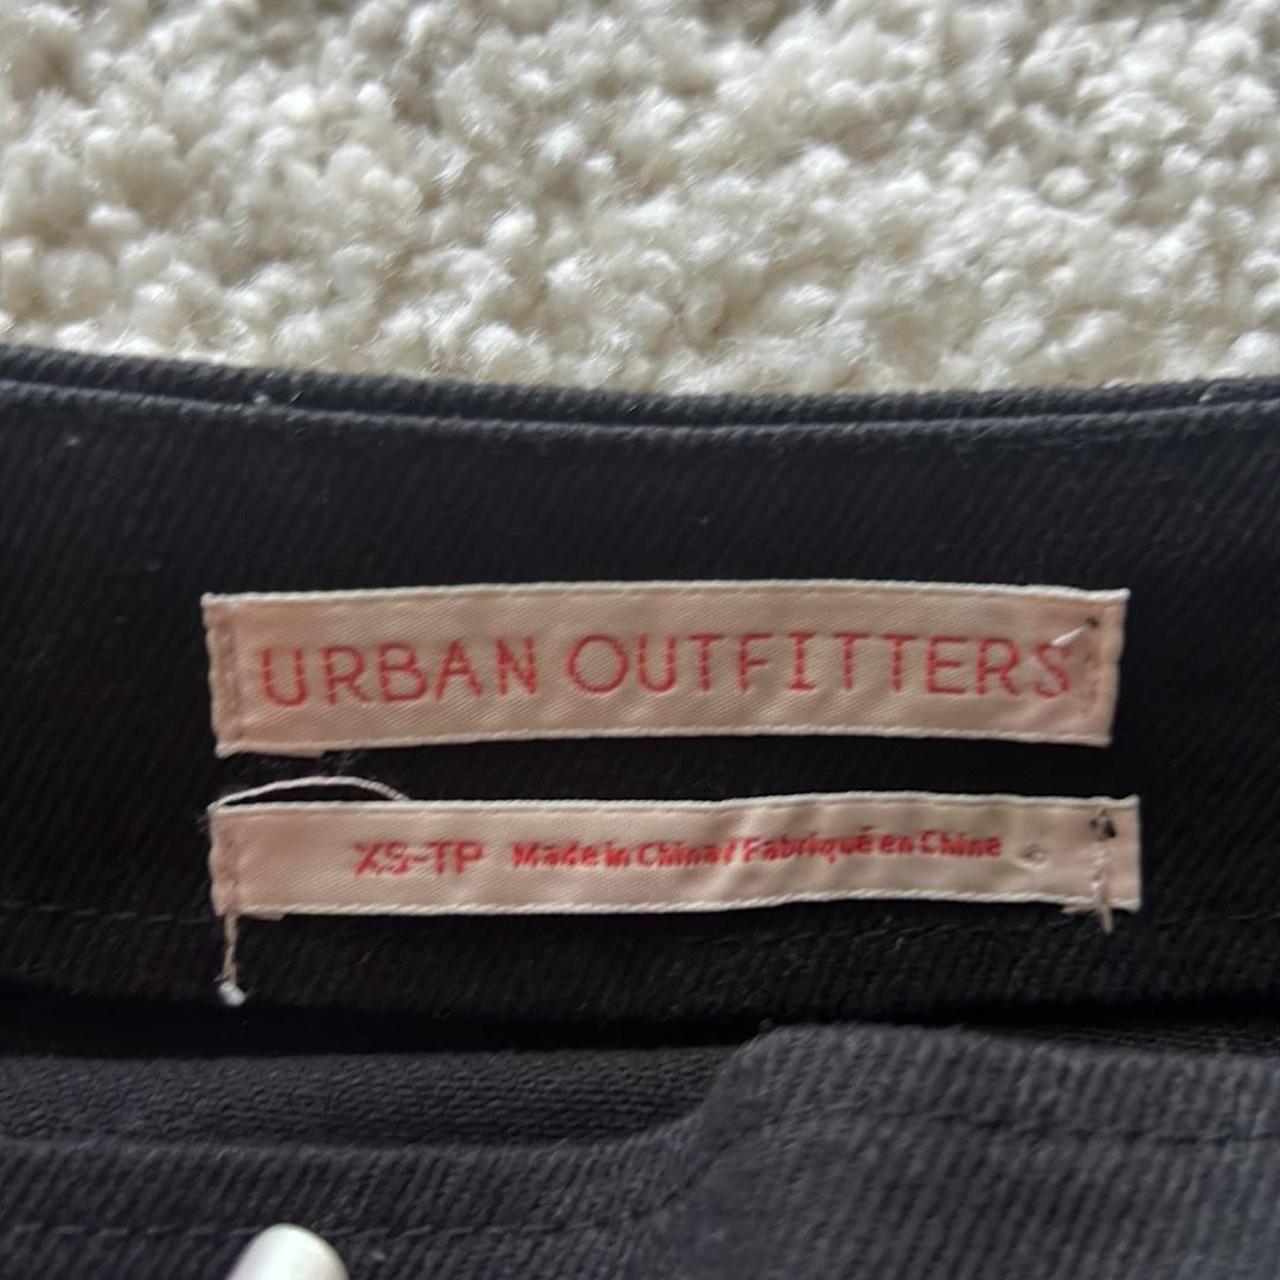 Urban outfitters skirt - Depop